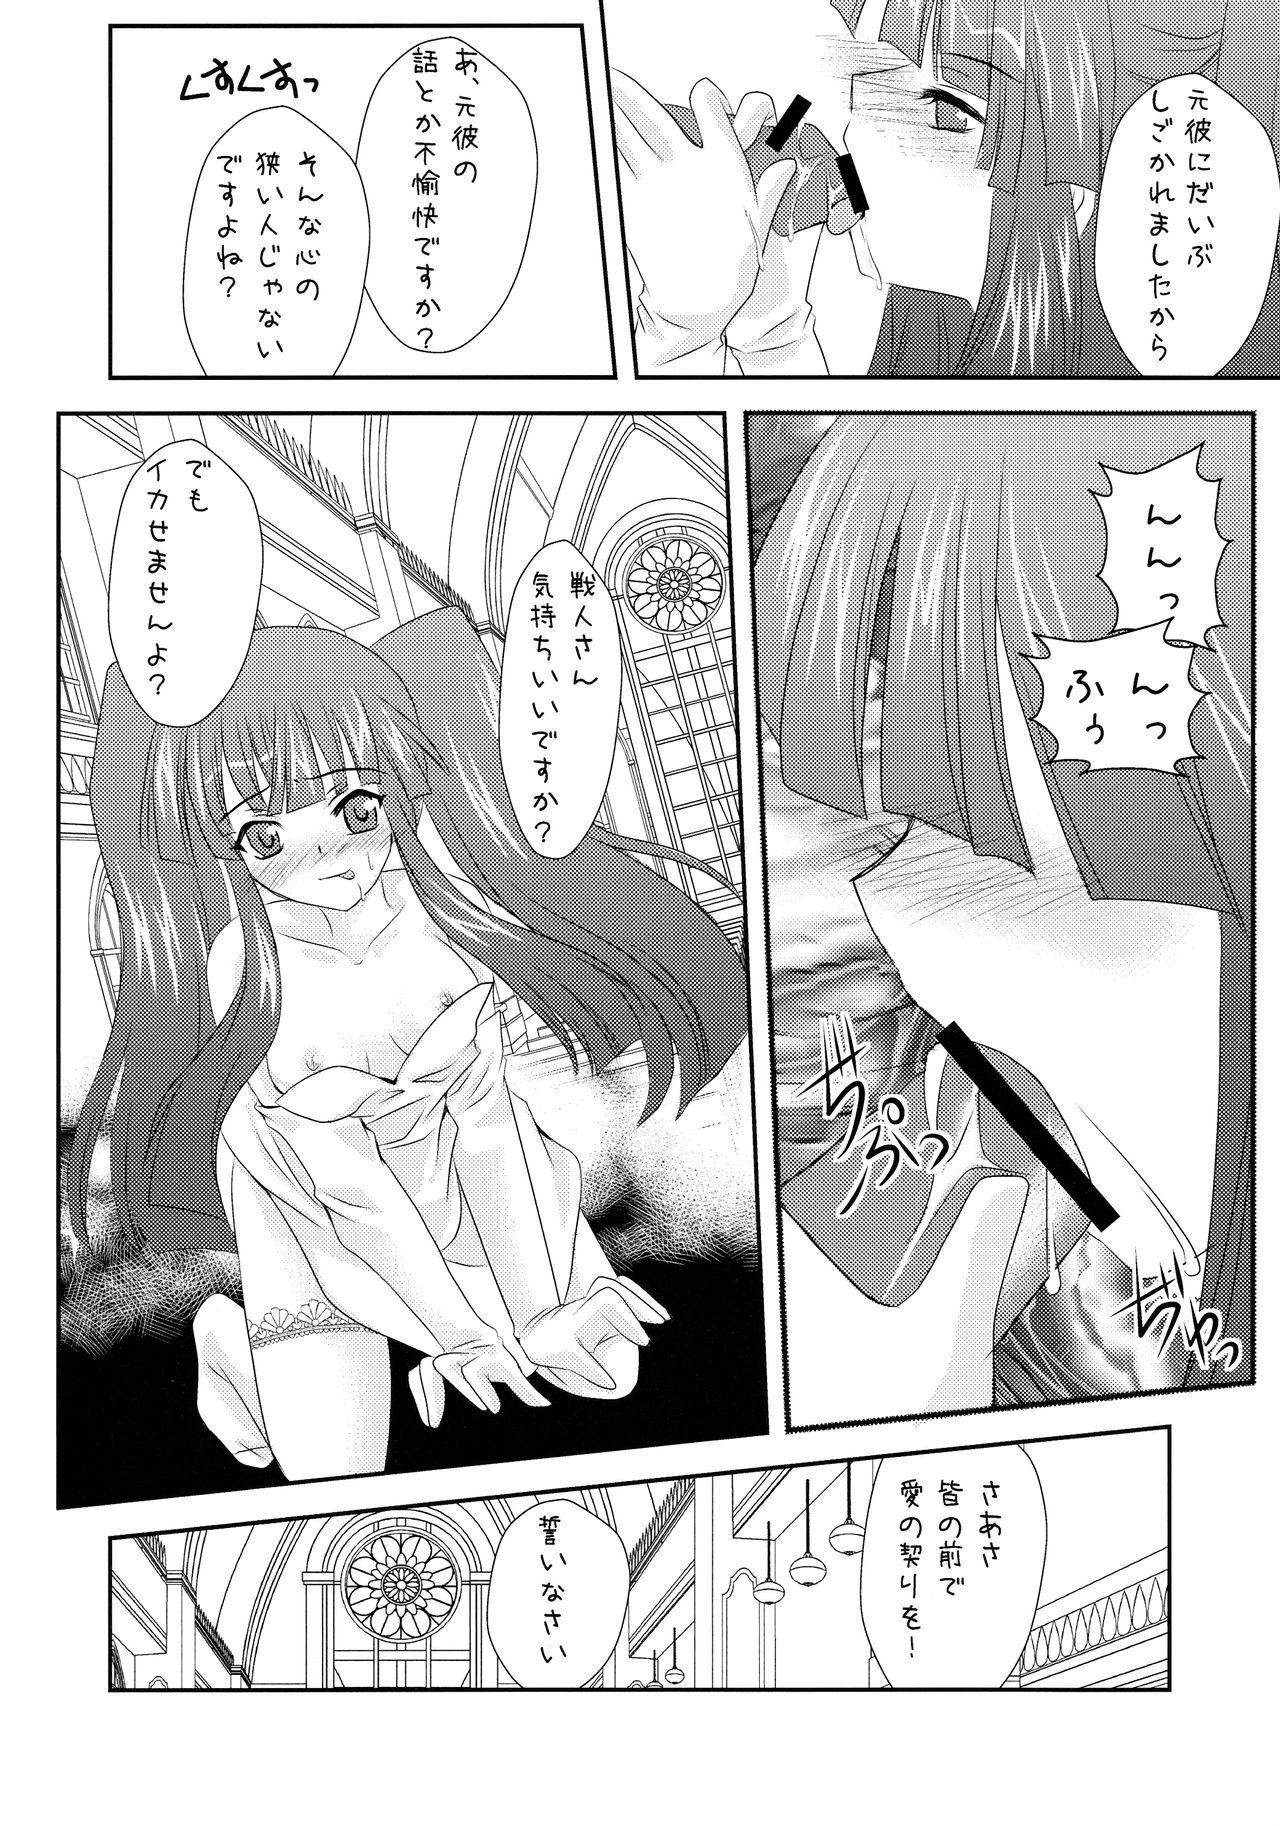 Corrida Ushiromiya Bride - Umineko no naku koro ni Porno - Page 8